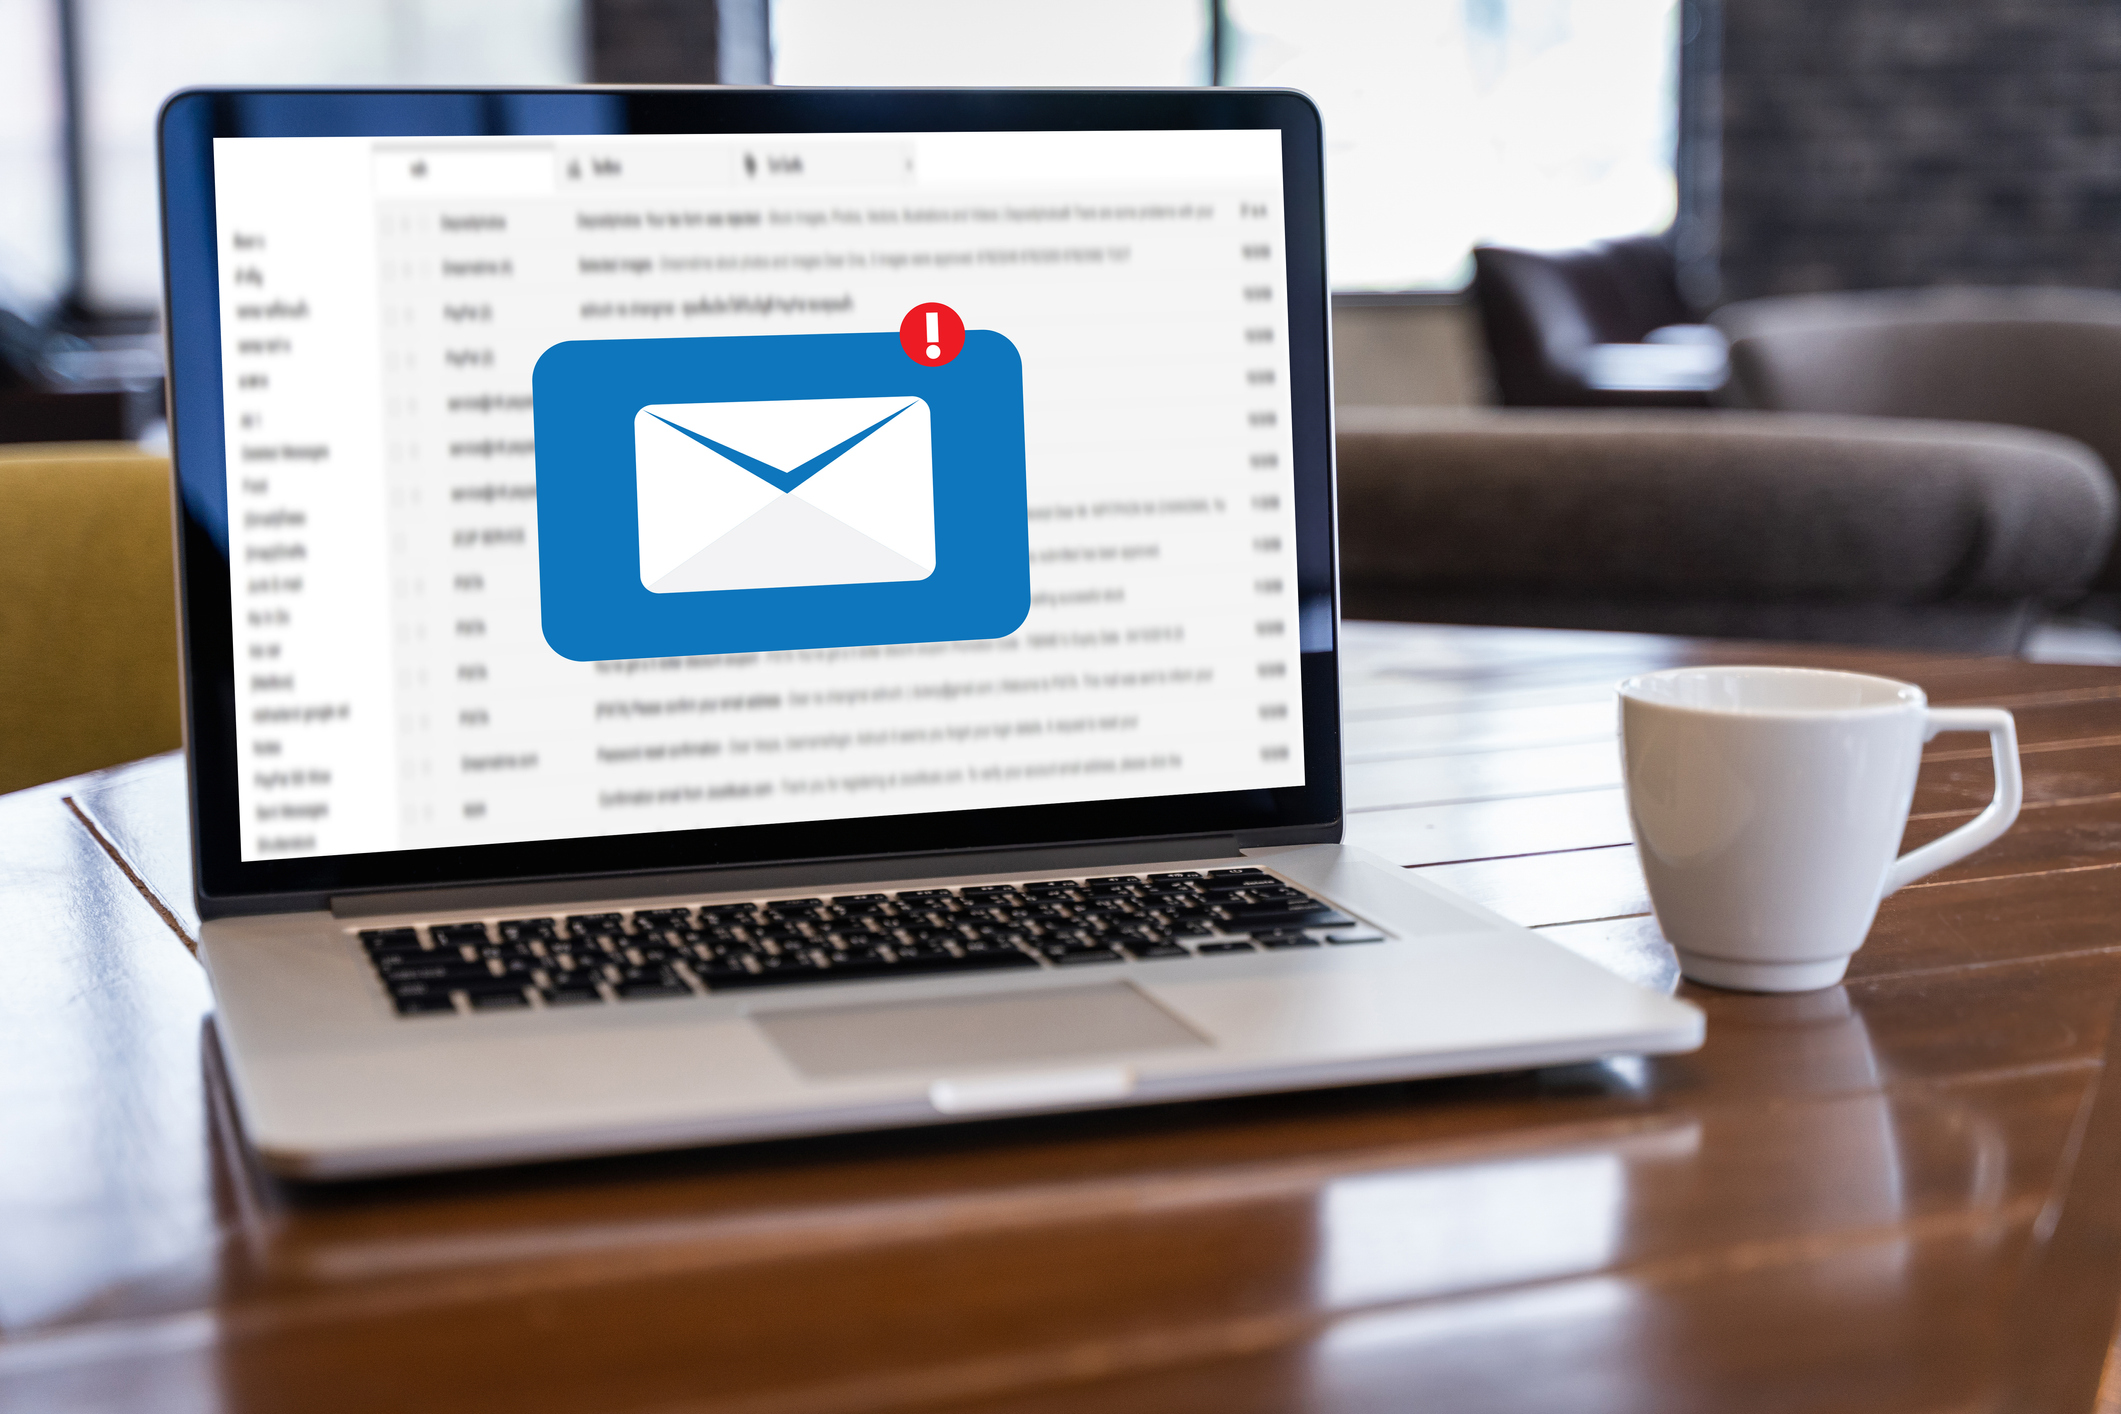 Gmail : comment bloquer rapidement et facilement une personne ?